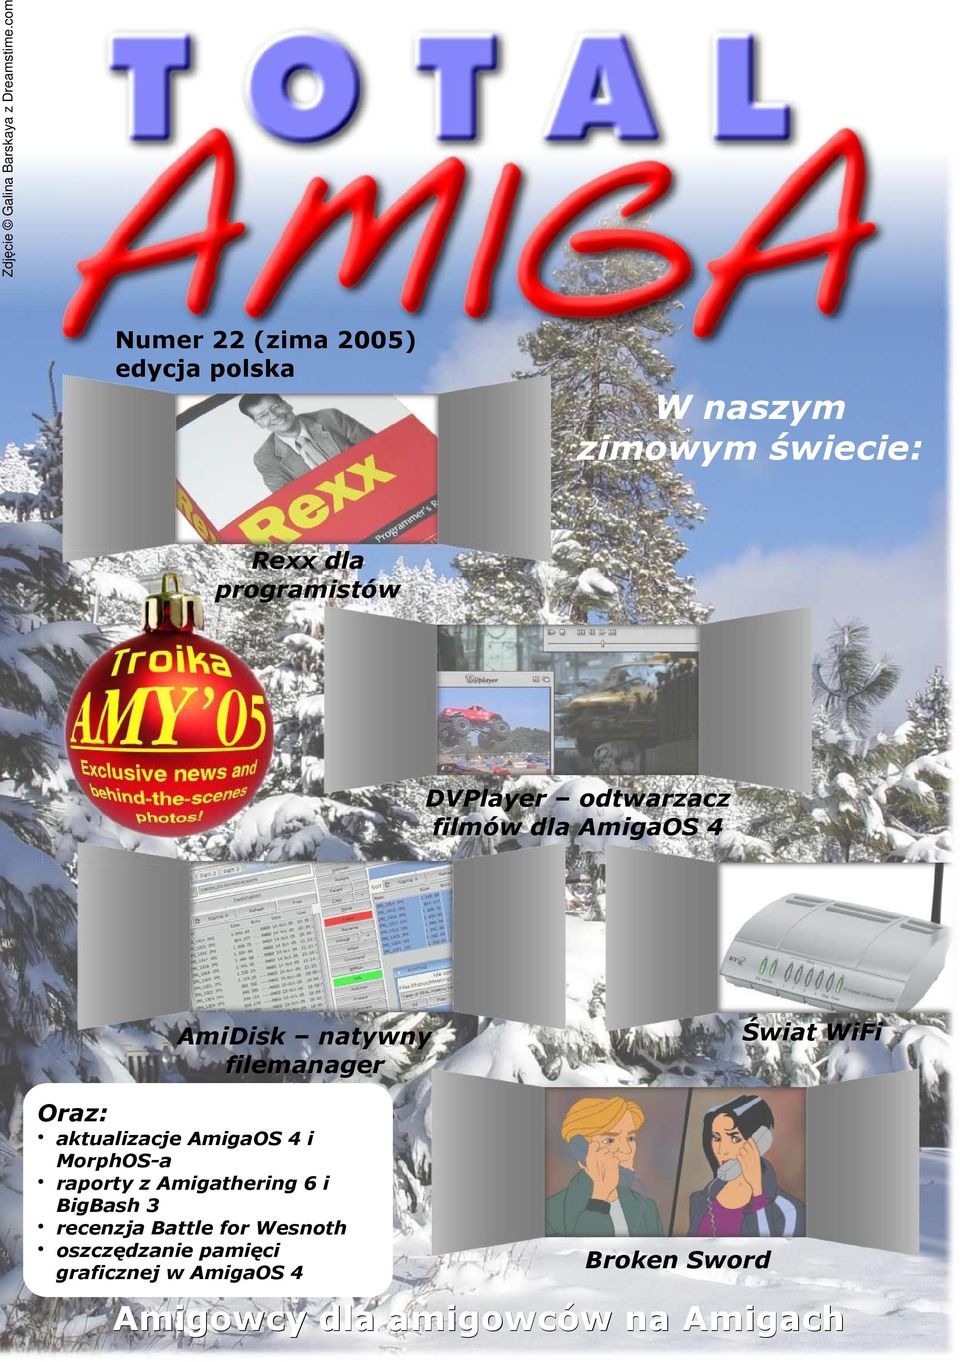 odtwarzacz filmów dla AmigaOS 4 AmiDisk natywny filemanager Świat WiFi Oraz: aktualizacje AmigaOS 4